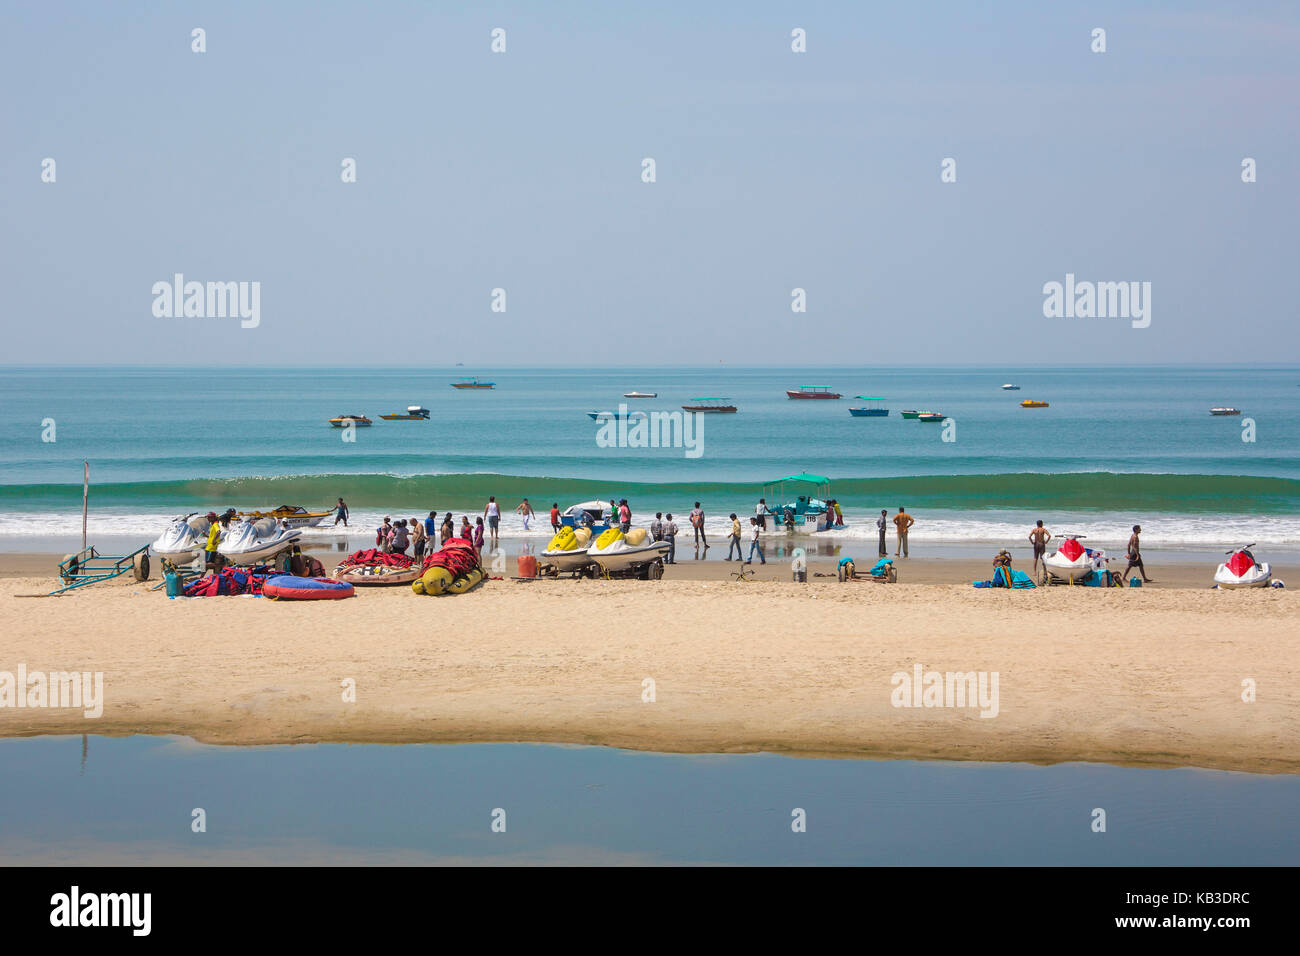 L'Inde, Goa, plage de colva, touristes et bottes sur la plage Banque D'Images